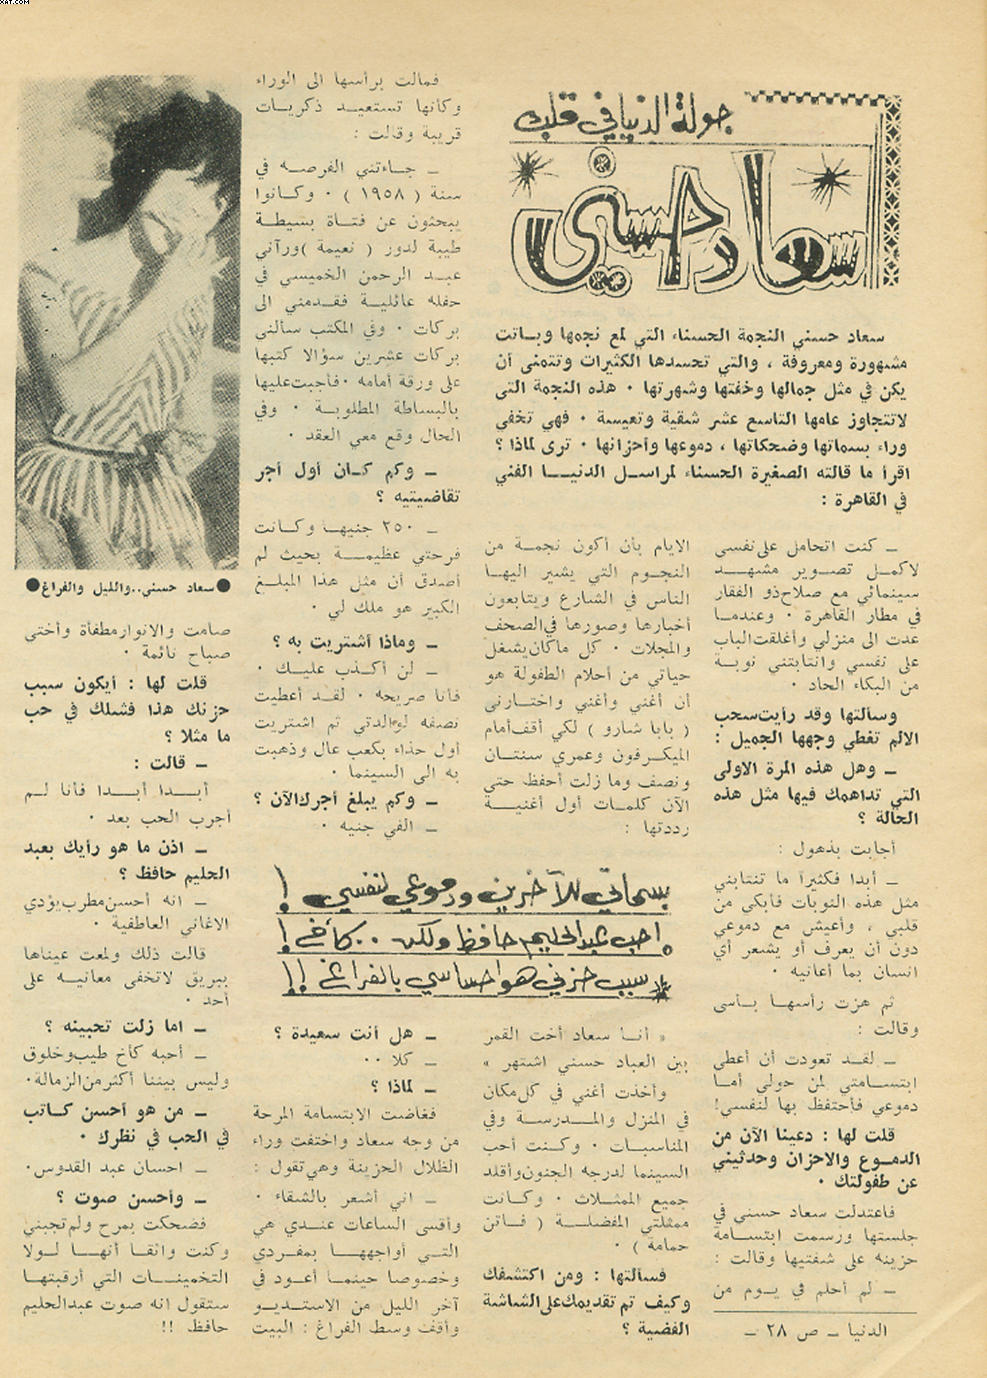 حوار - حوار صحفي : جولة الدنيا في قلب "سعاد حسني" 1963 م Yiao_a10